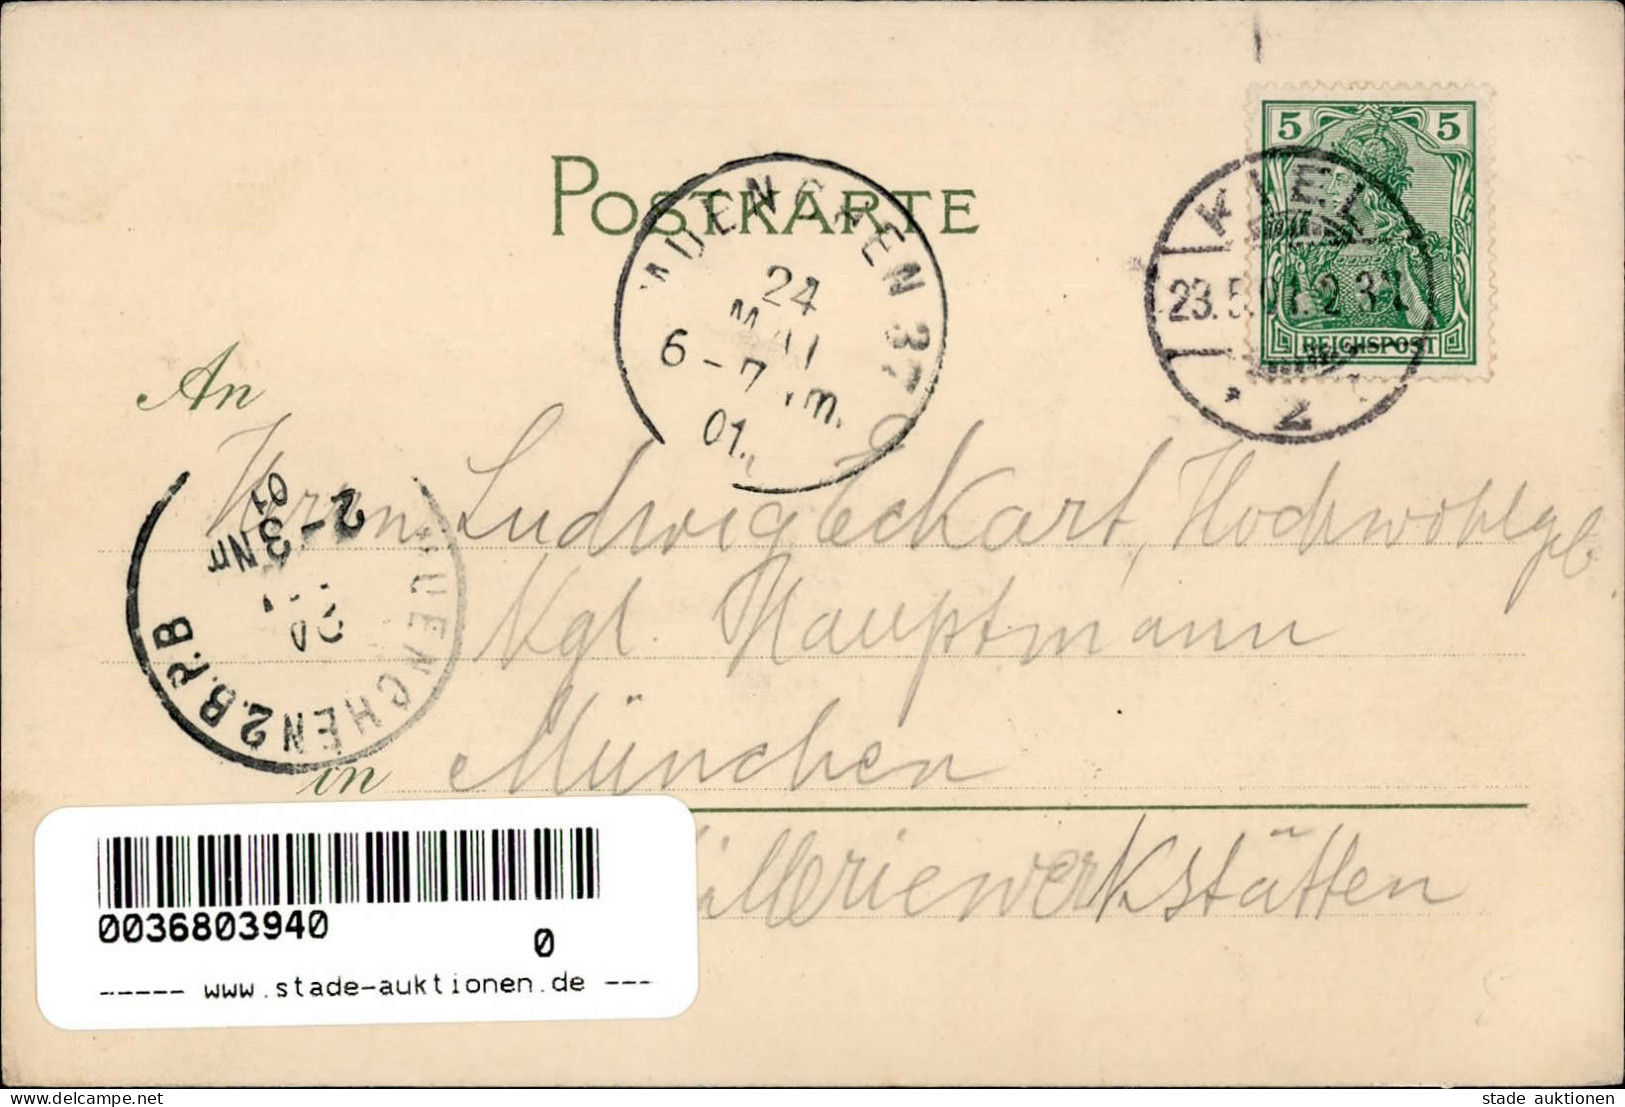 Schiff Dampfschiff Darmstadt Mit Dem Seebataillon Nach China Sign. Stöwer, Willy I-II Bateaux Bateaux - War 1914-18